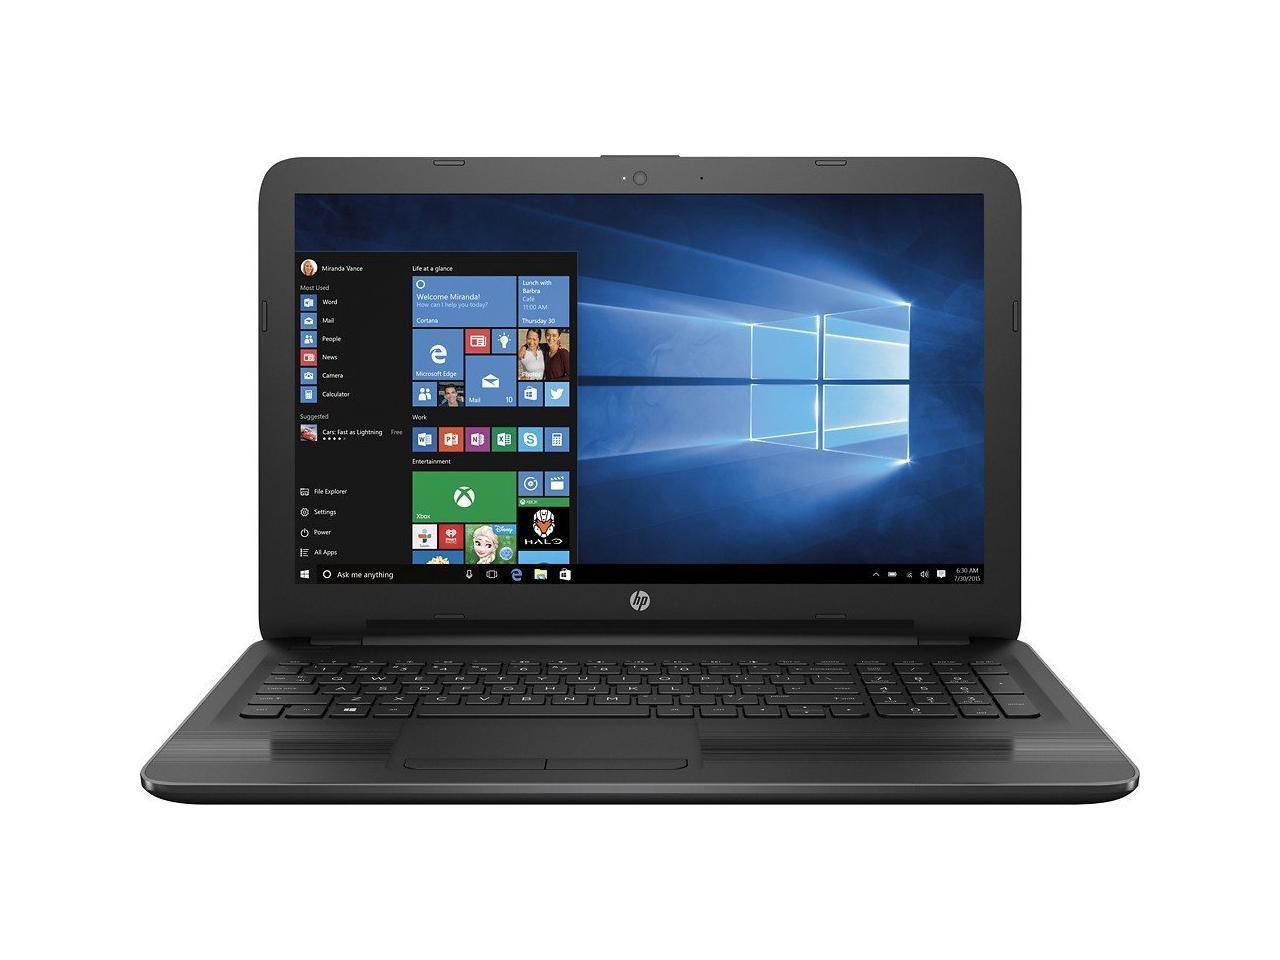 HP WLED 15.6 Inch Gaming Laptop